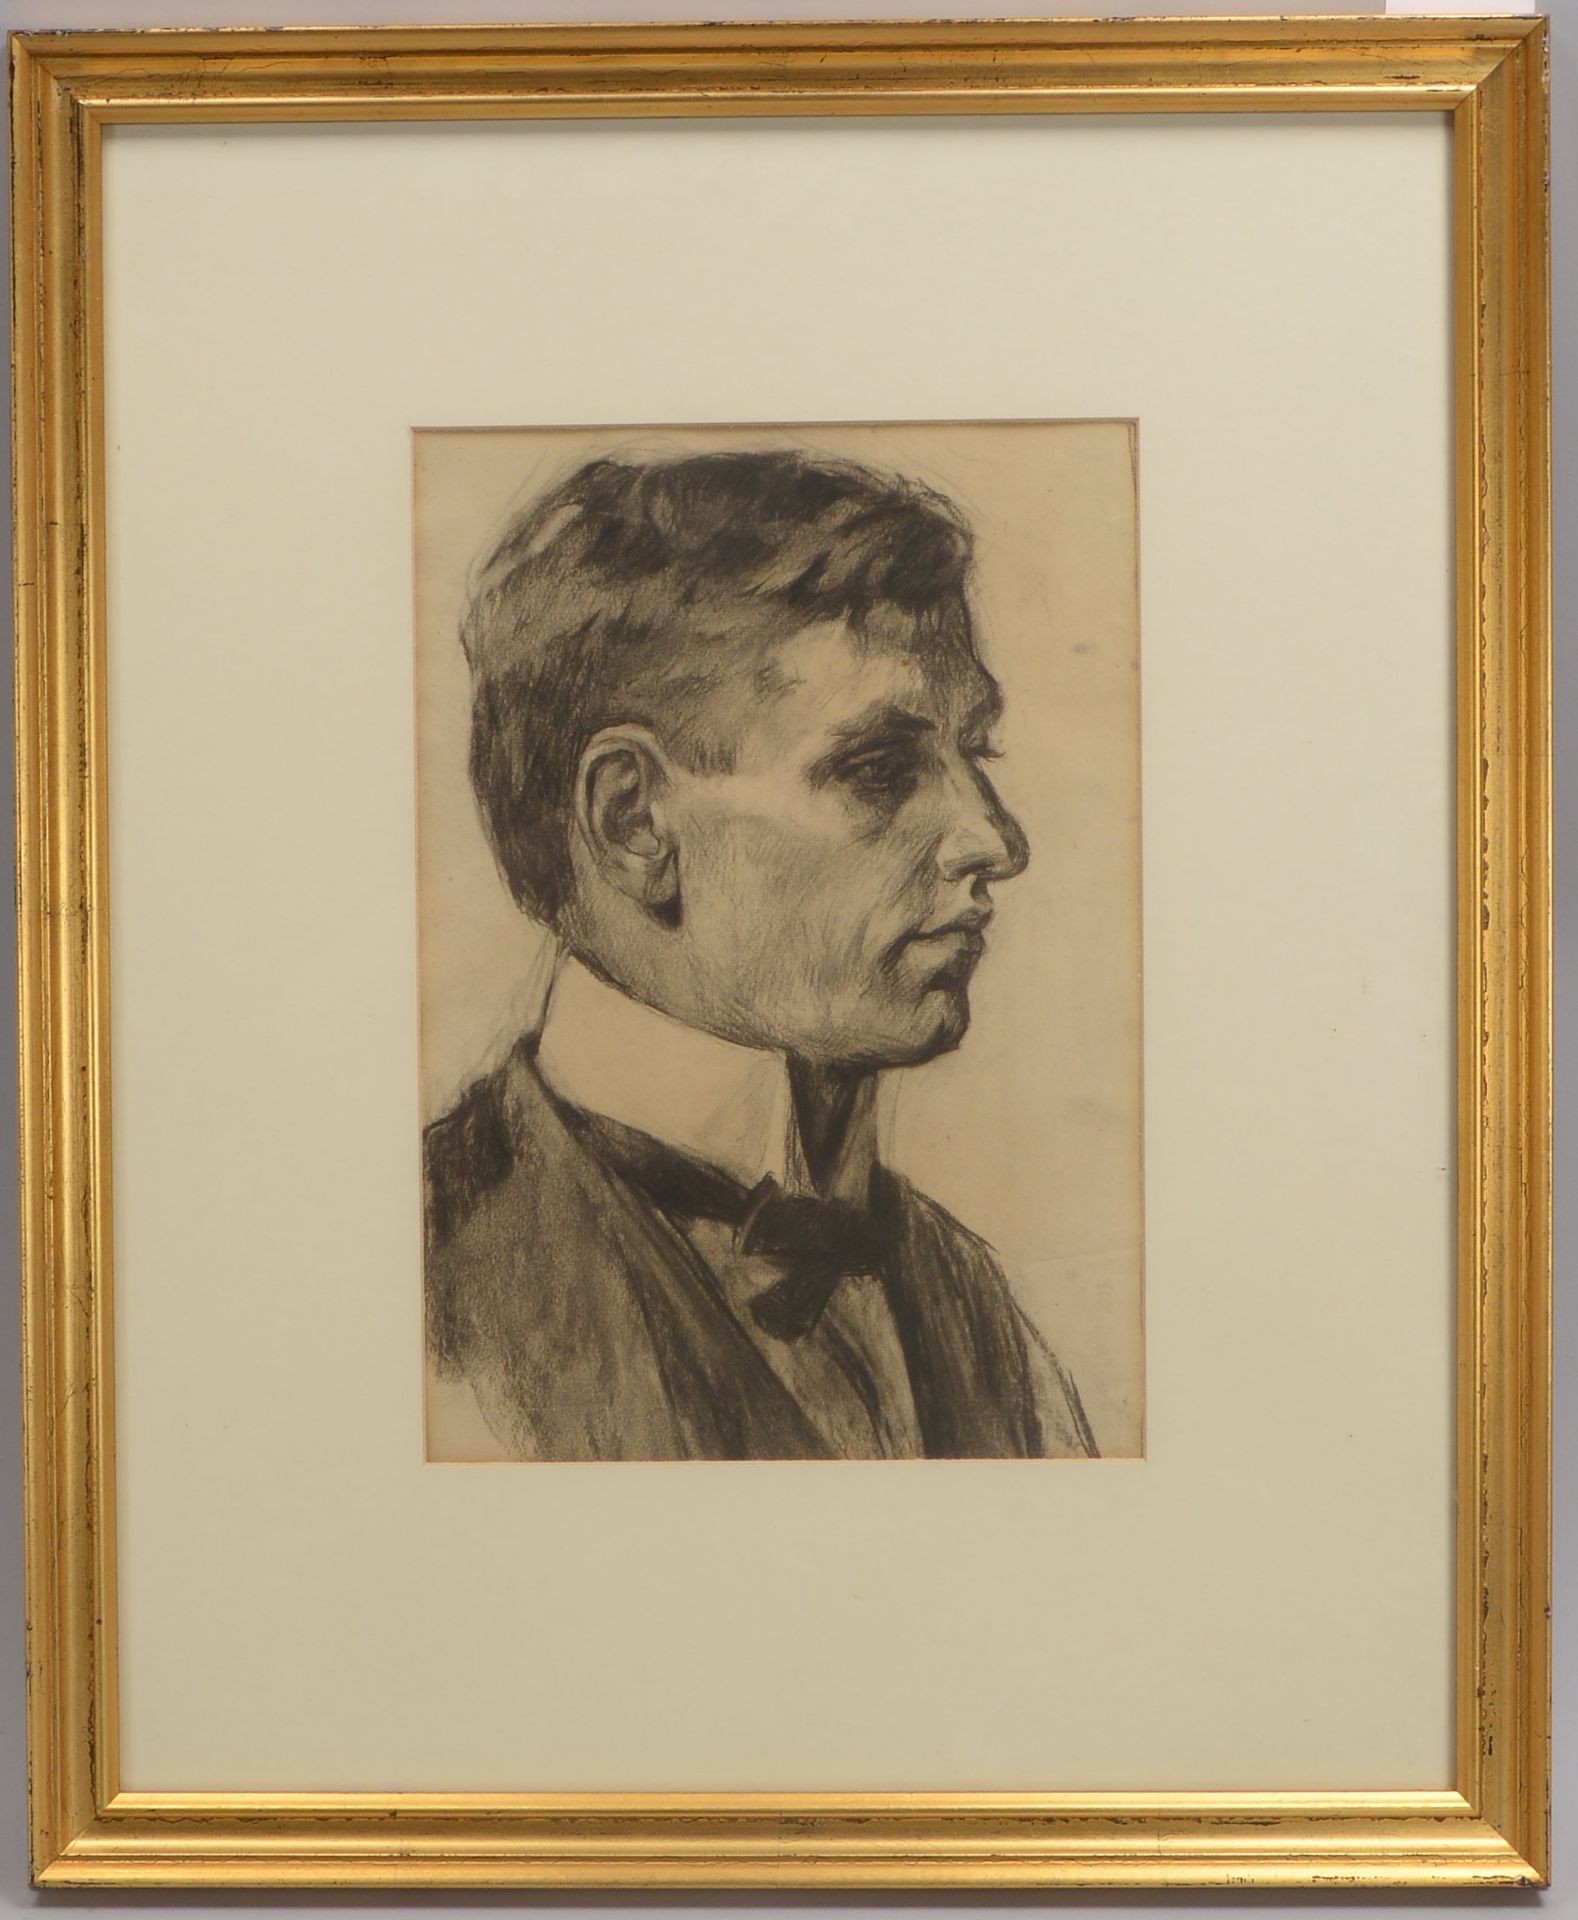 Rusche, Moritz (1888 - 1969), 'Herrenportrait', Rötelzeichnung, monogrammiert und datiert, hinter Gl